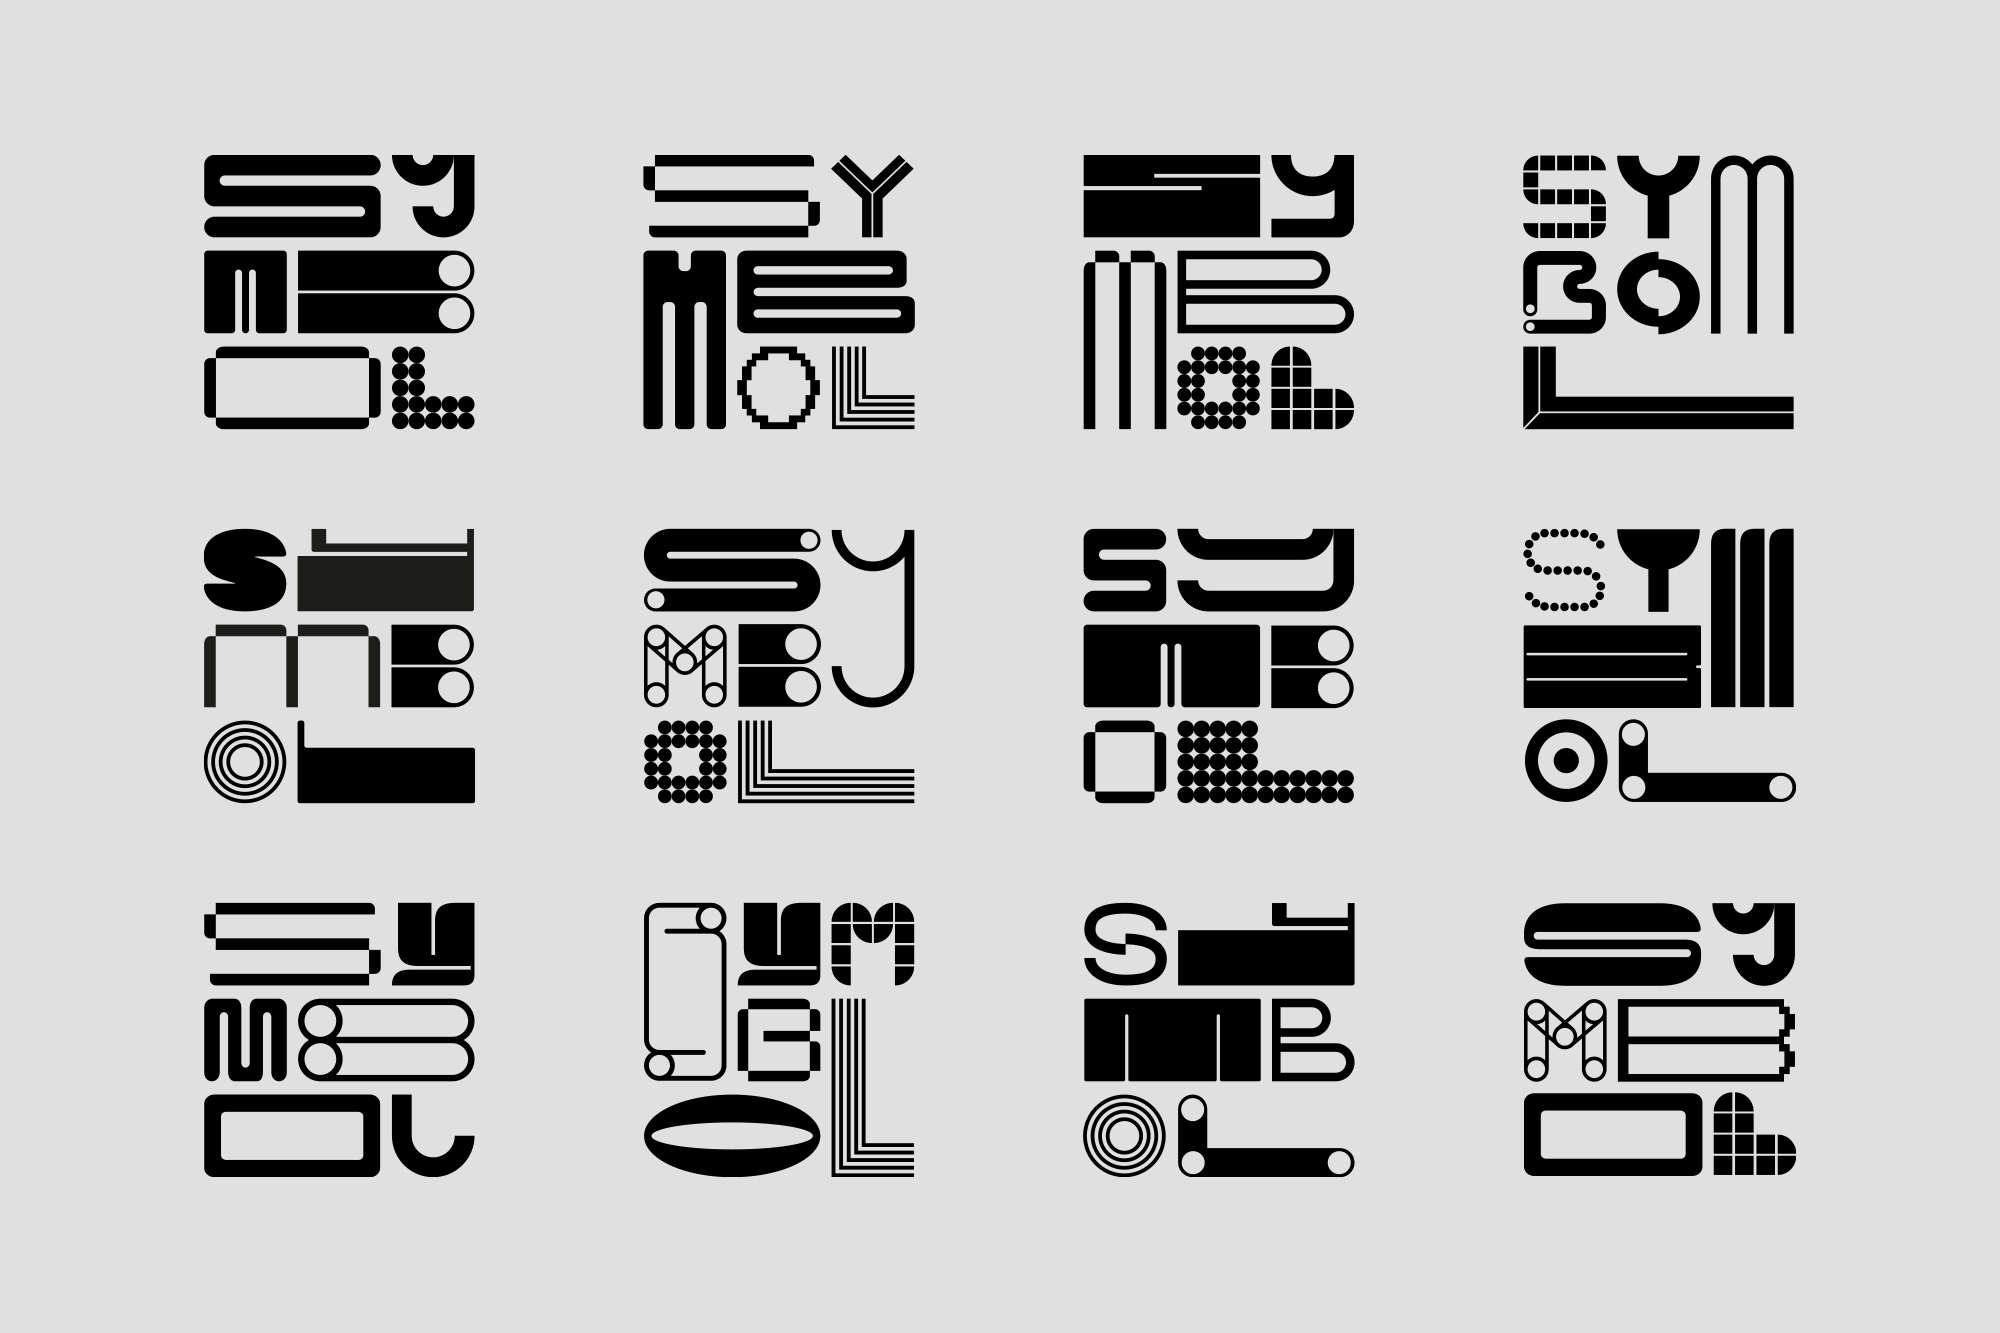 Symbol typographic type treatment